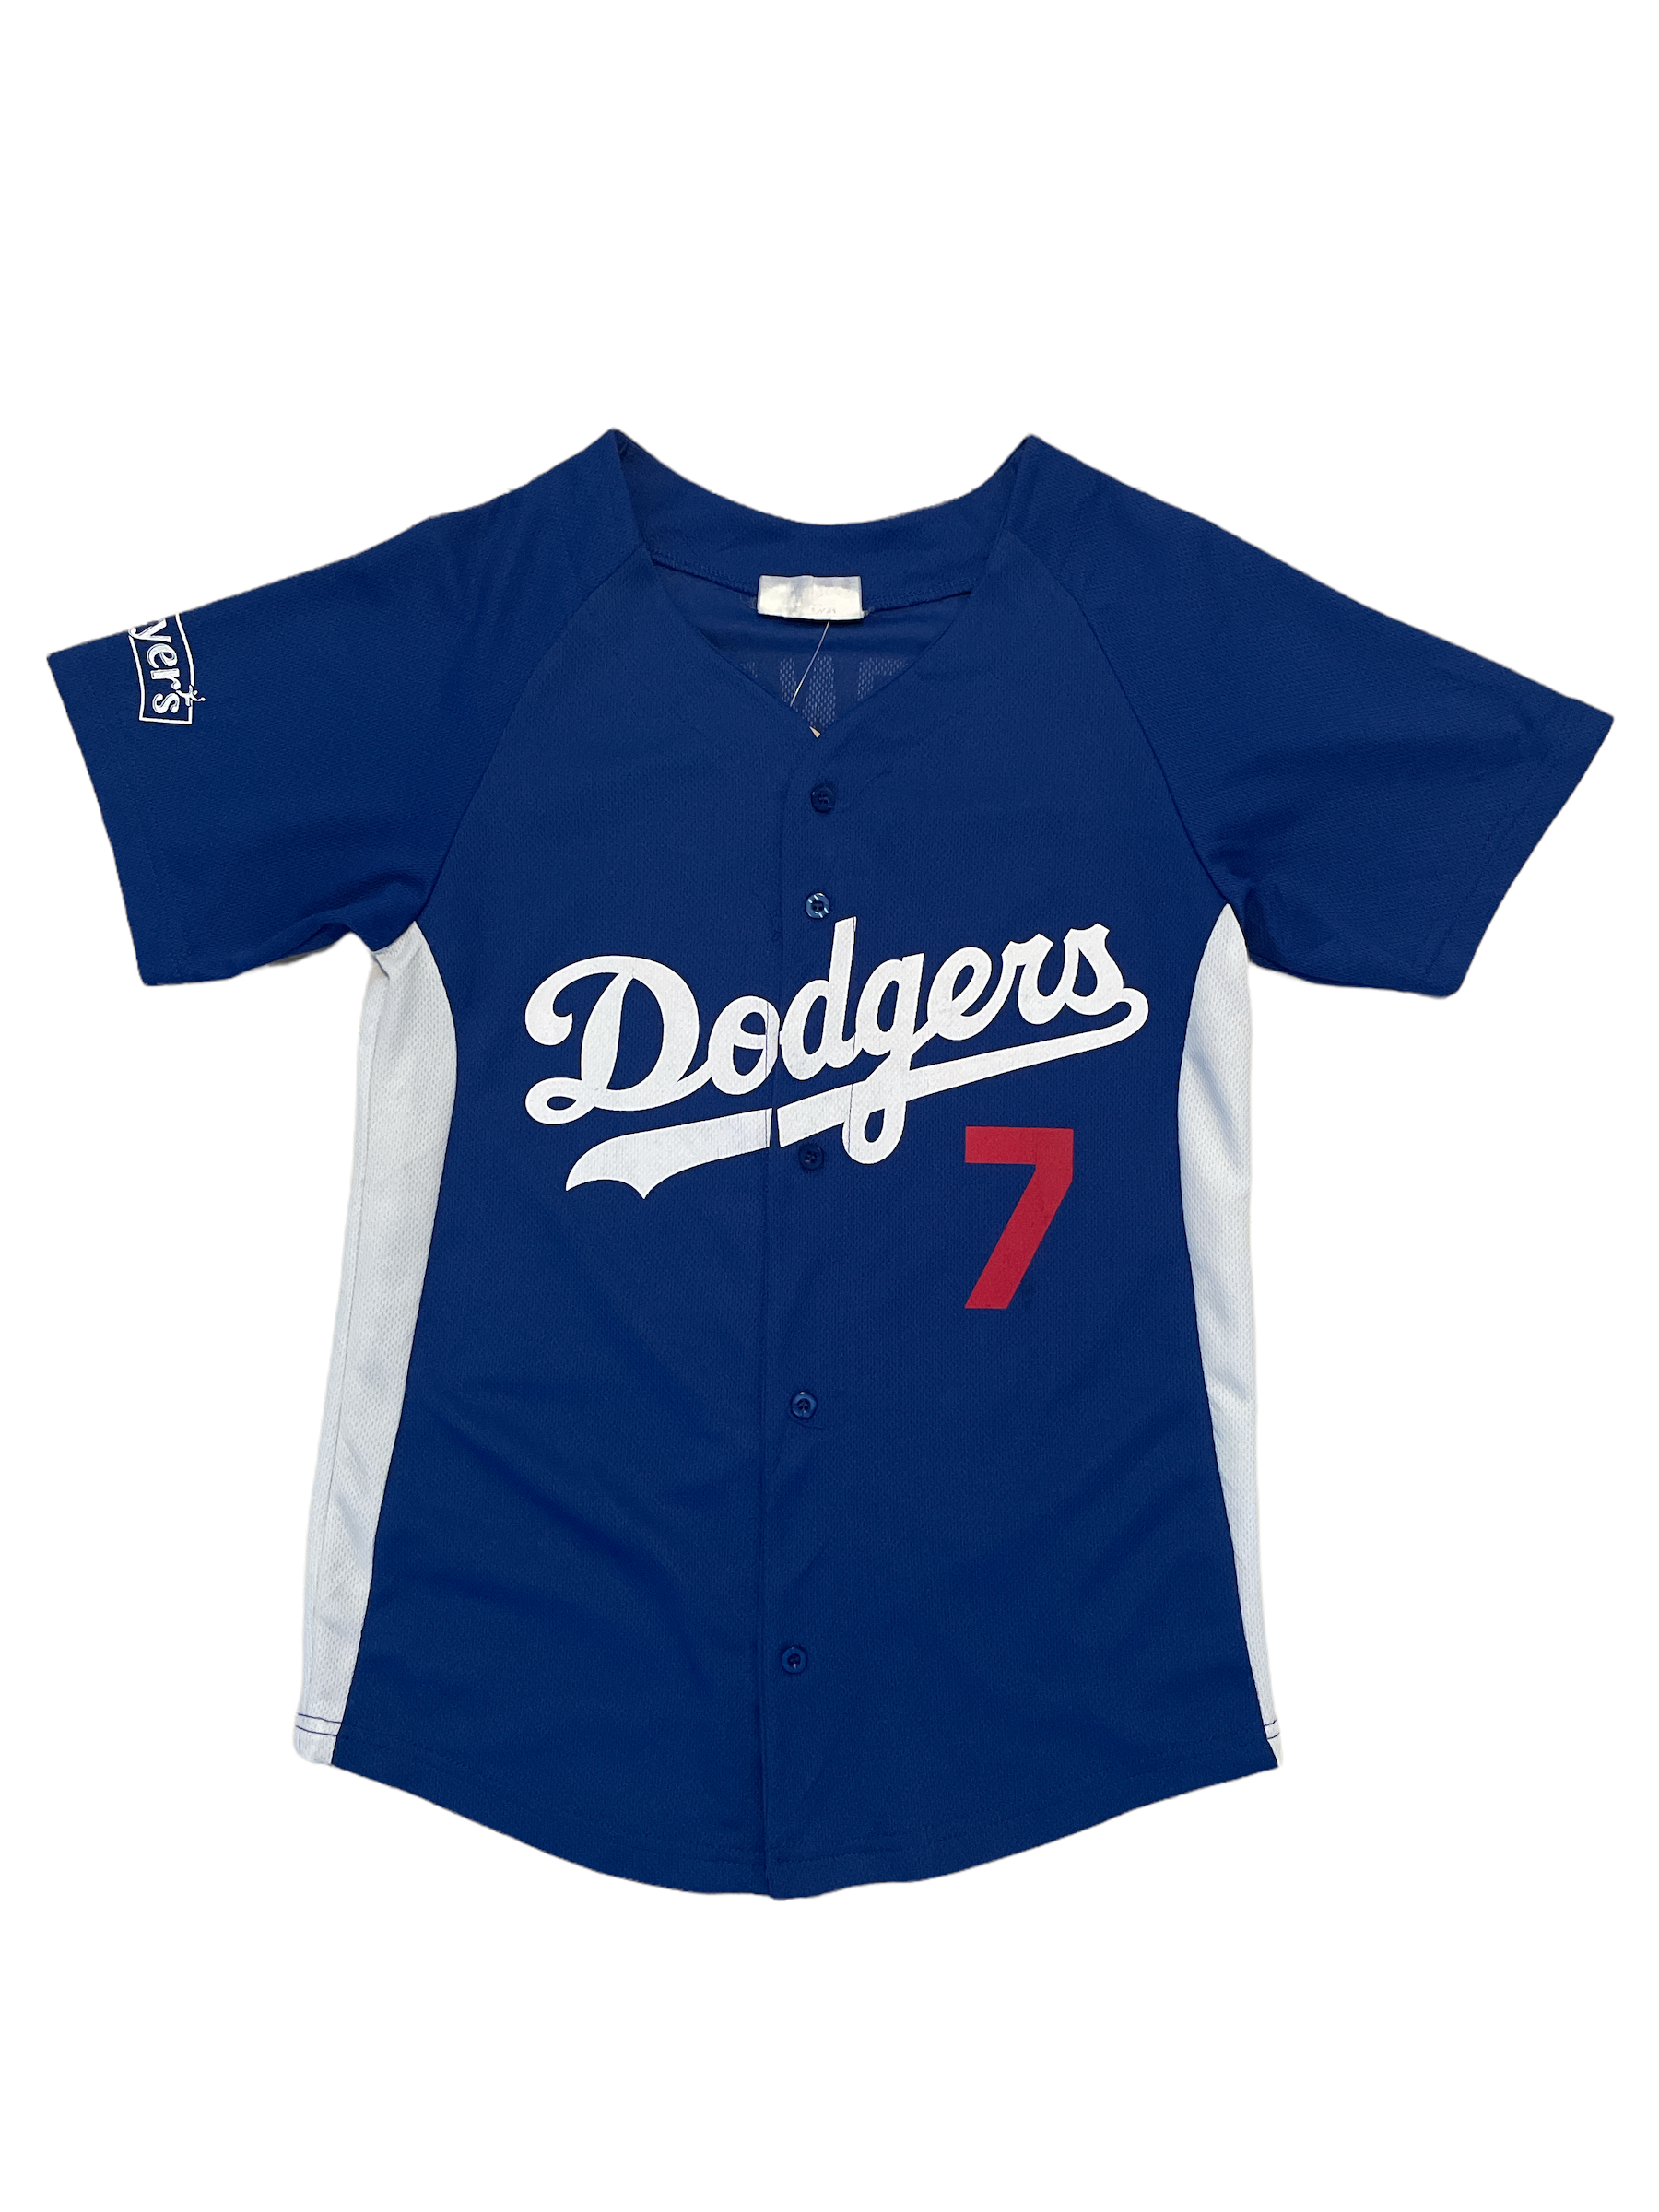 Dodgers Baseball Jersey Loney 7 – Arkive Vintage